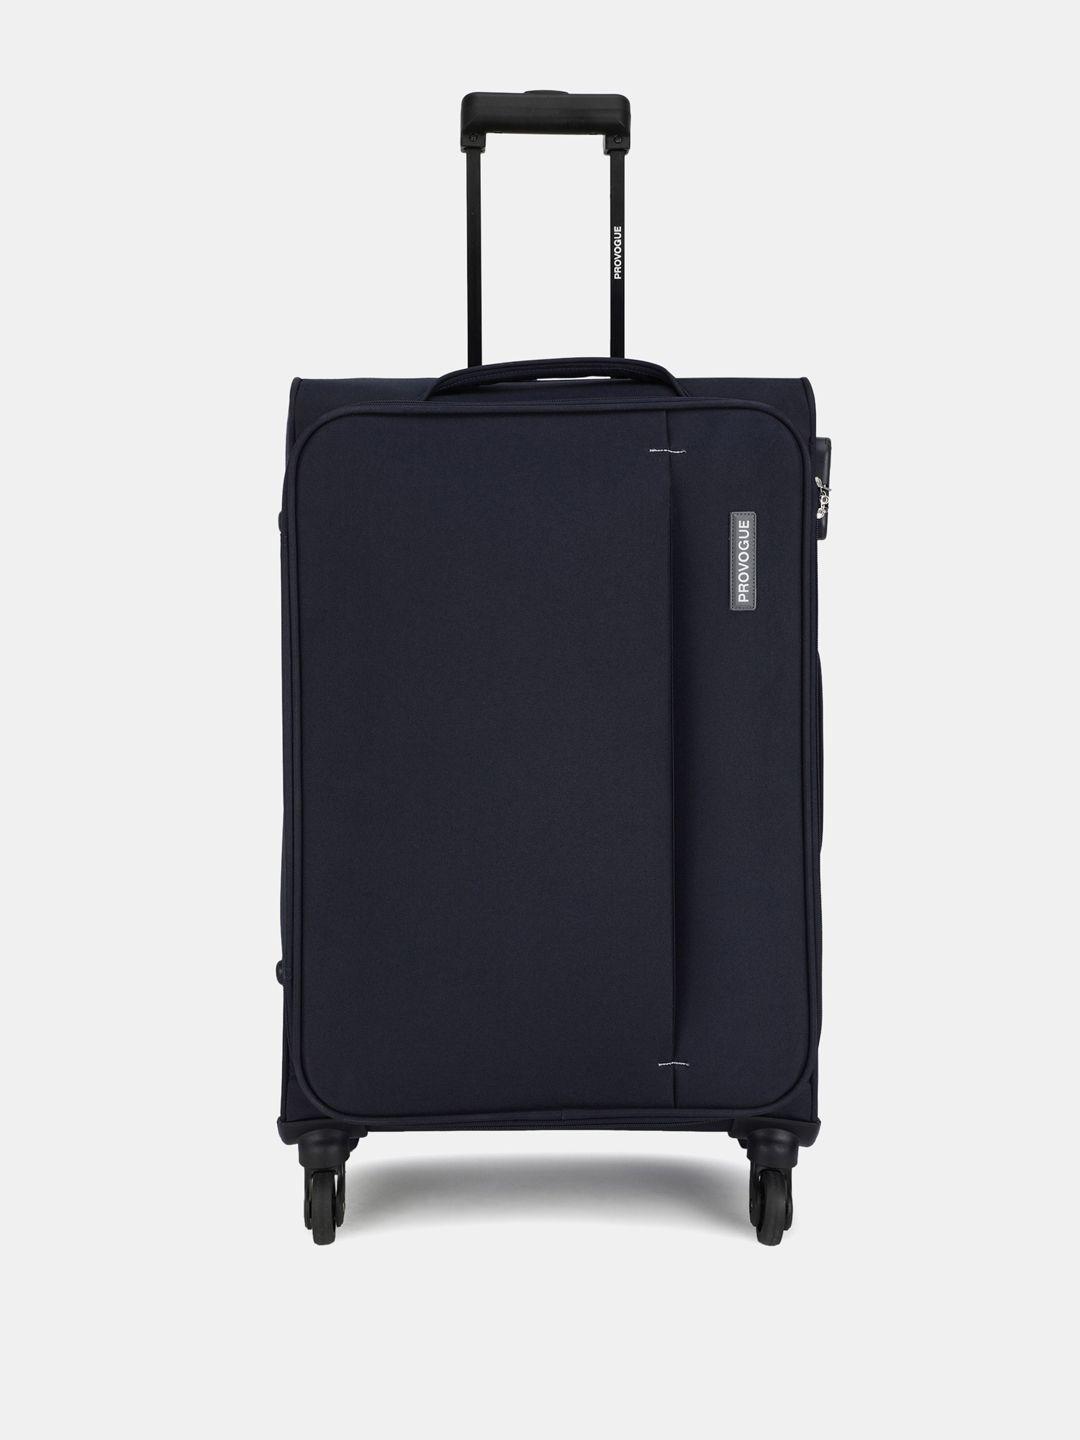 provogue edge large soft trolley suitcase - 75 cm